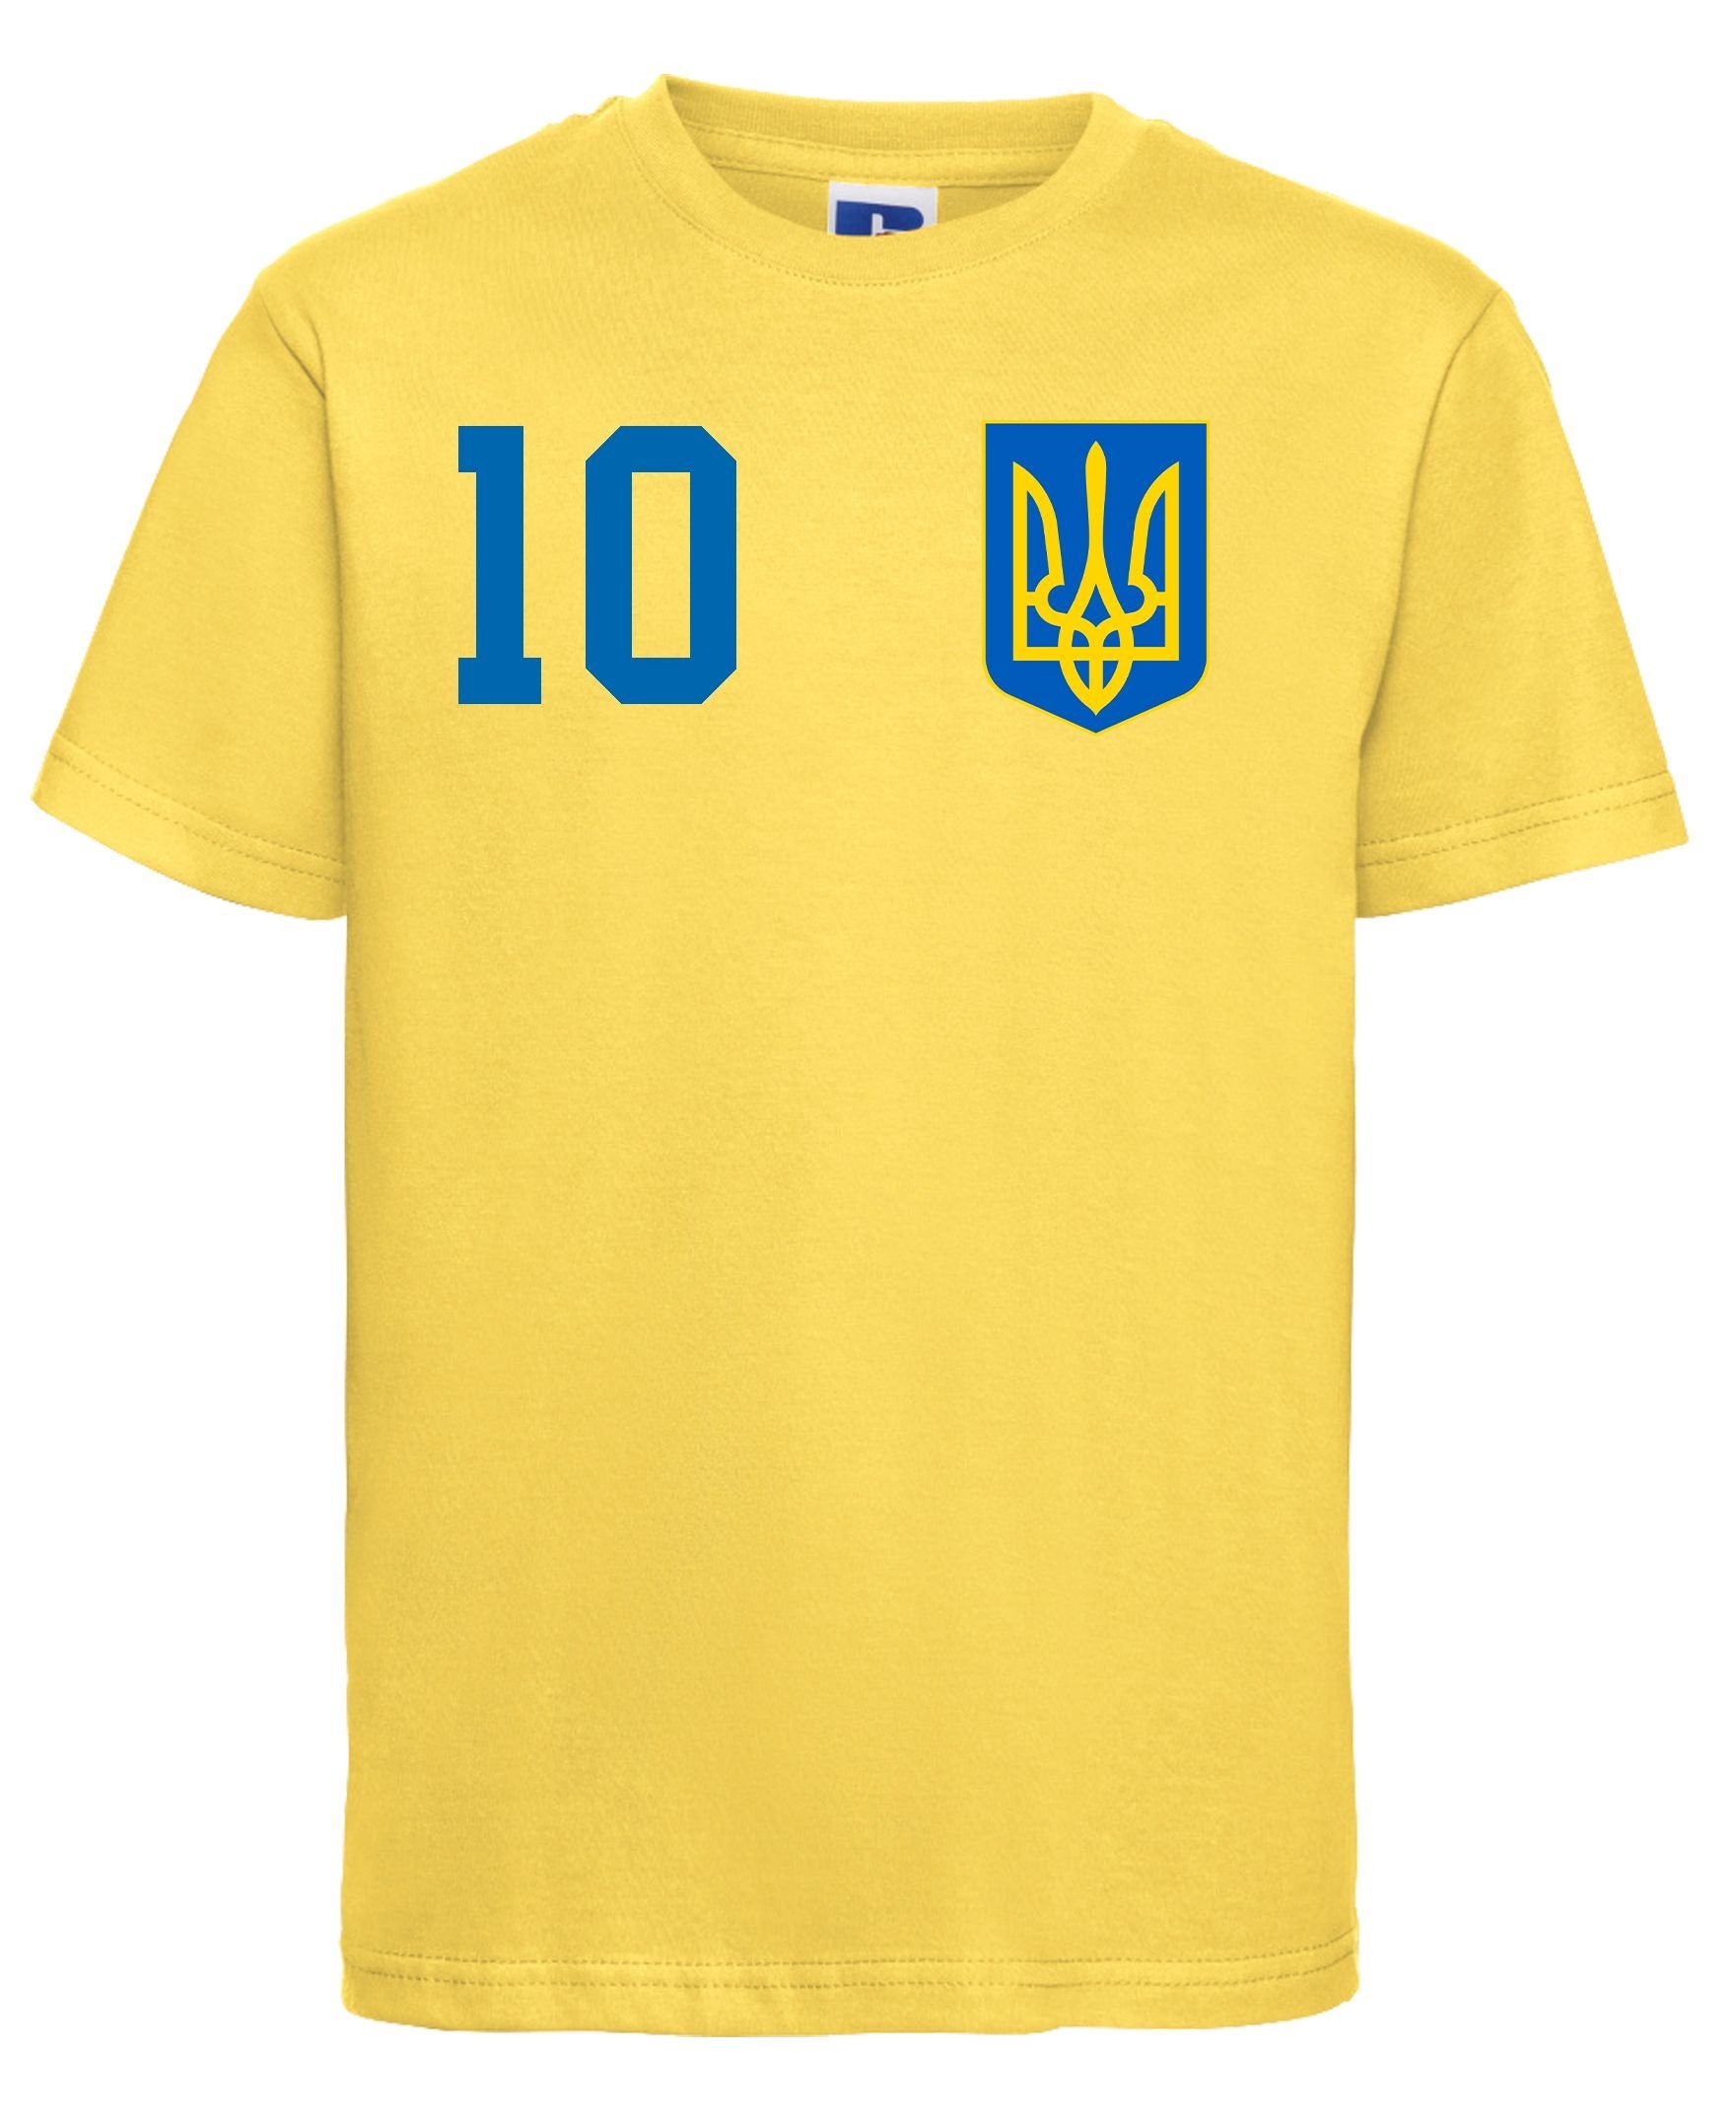 Youth Look trendigem Fußball im Designz Print Trikot Print-Shirt mit Ukraine Kinder T-Shirt